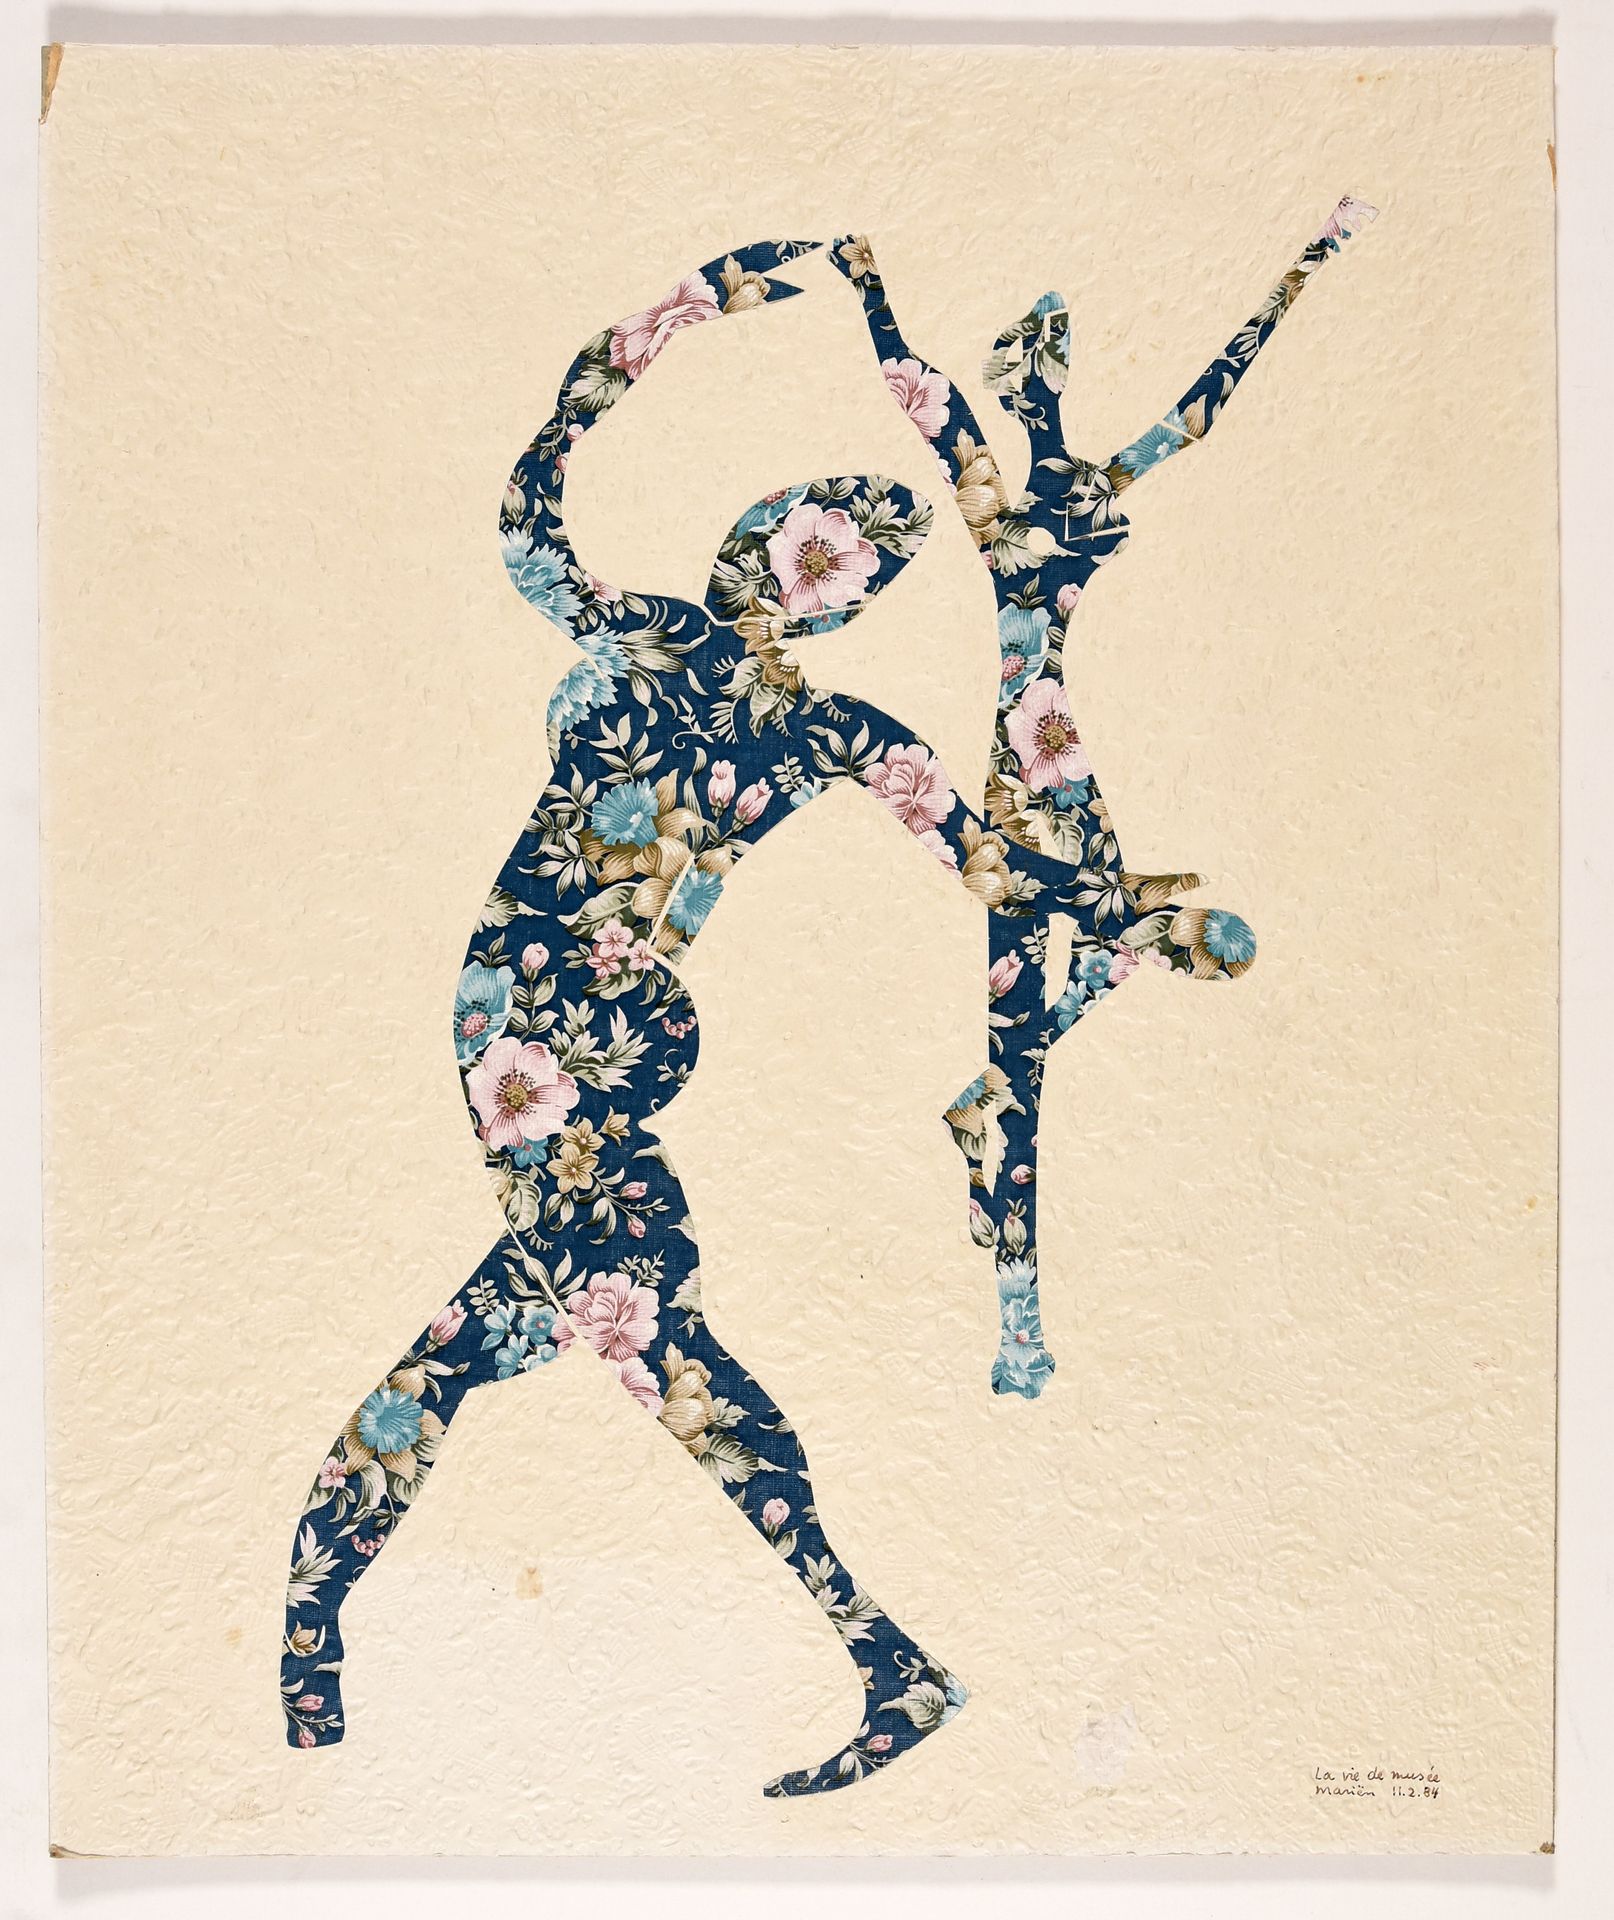 Mariën, Marcel MARIËN, Marcel La vie de musée. 1984 Collage, papel pintado monta&hellip;